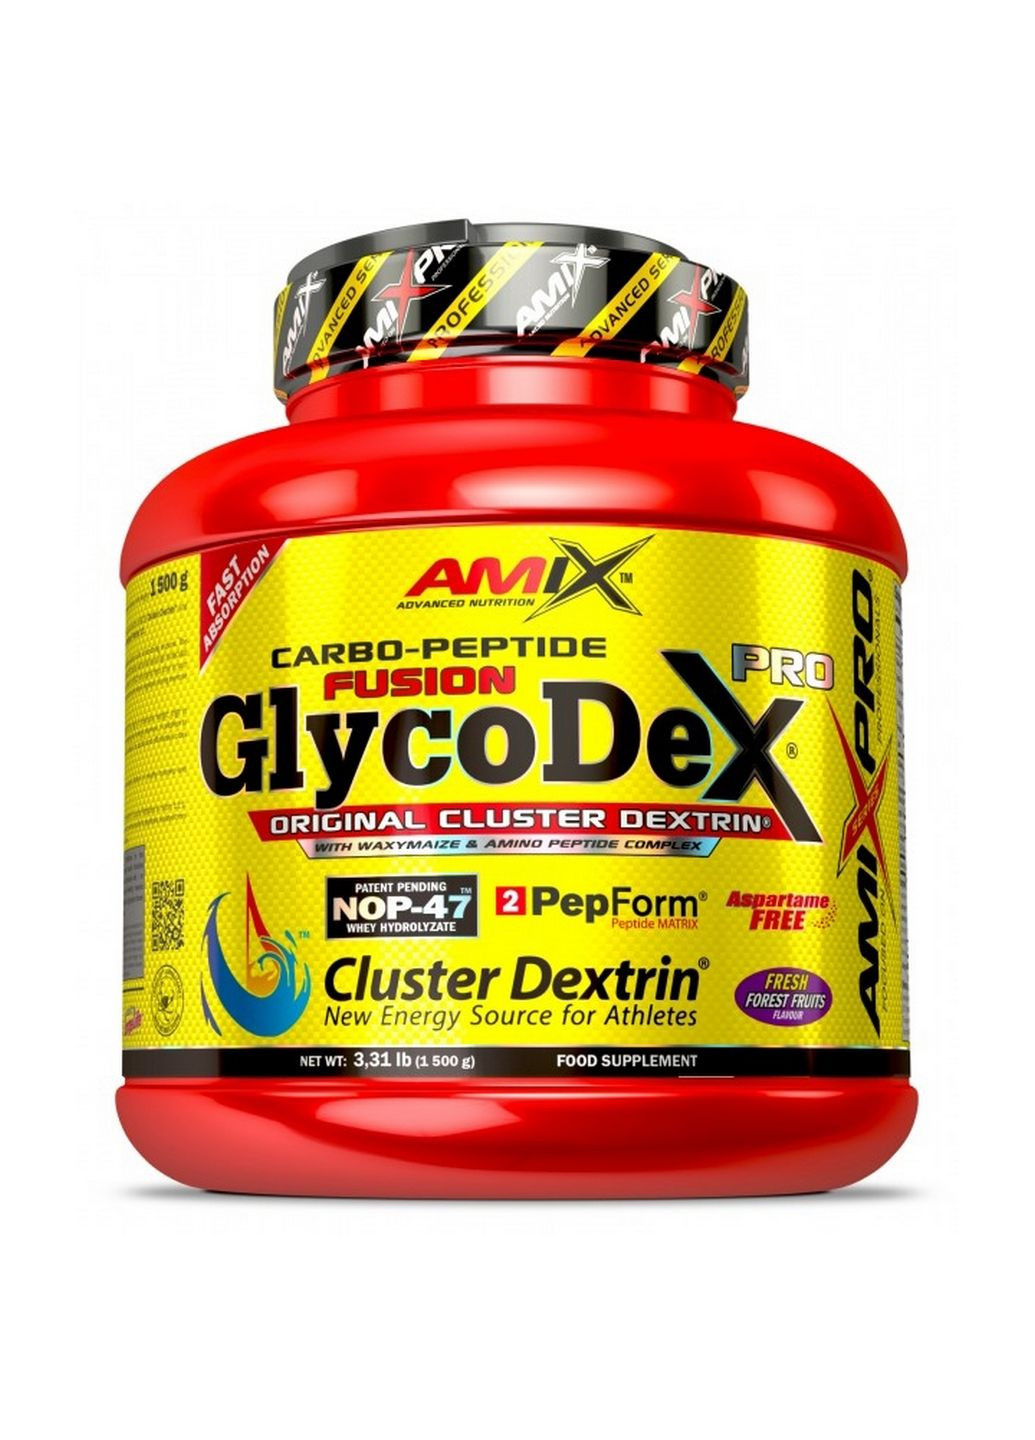 Гейнер Nutrition GlycodeX Pro, 1.5 кг Лесные ягоды Amix Nutrition (293482666)